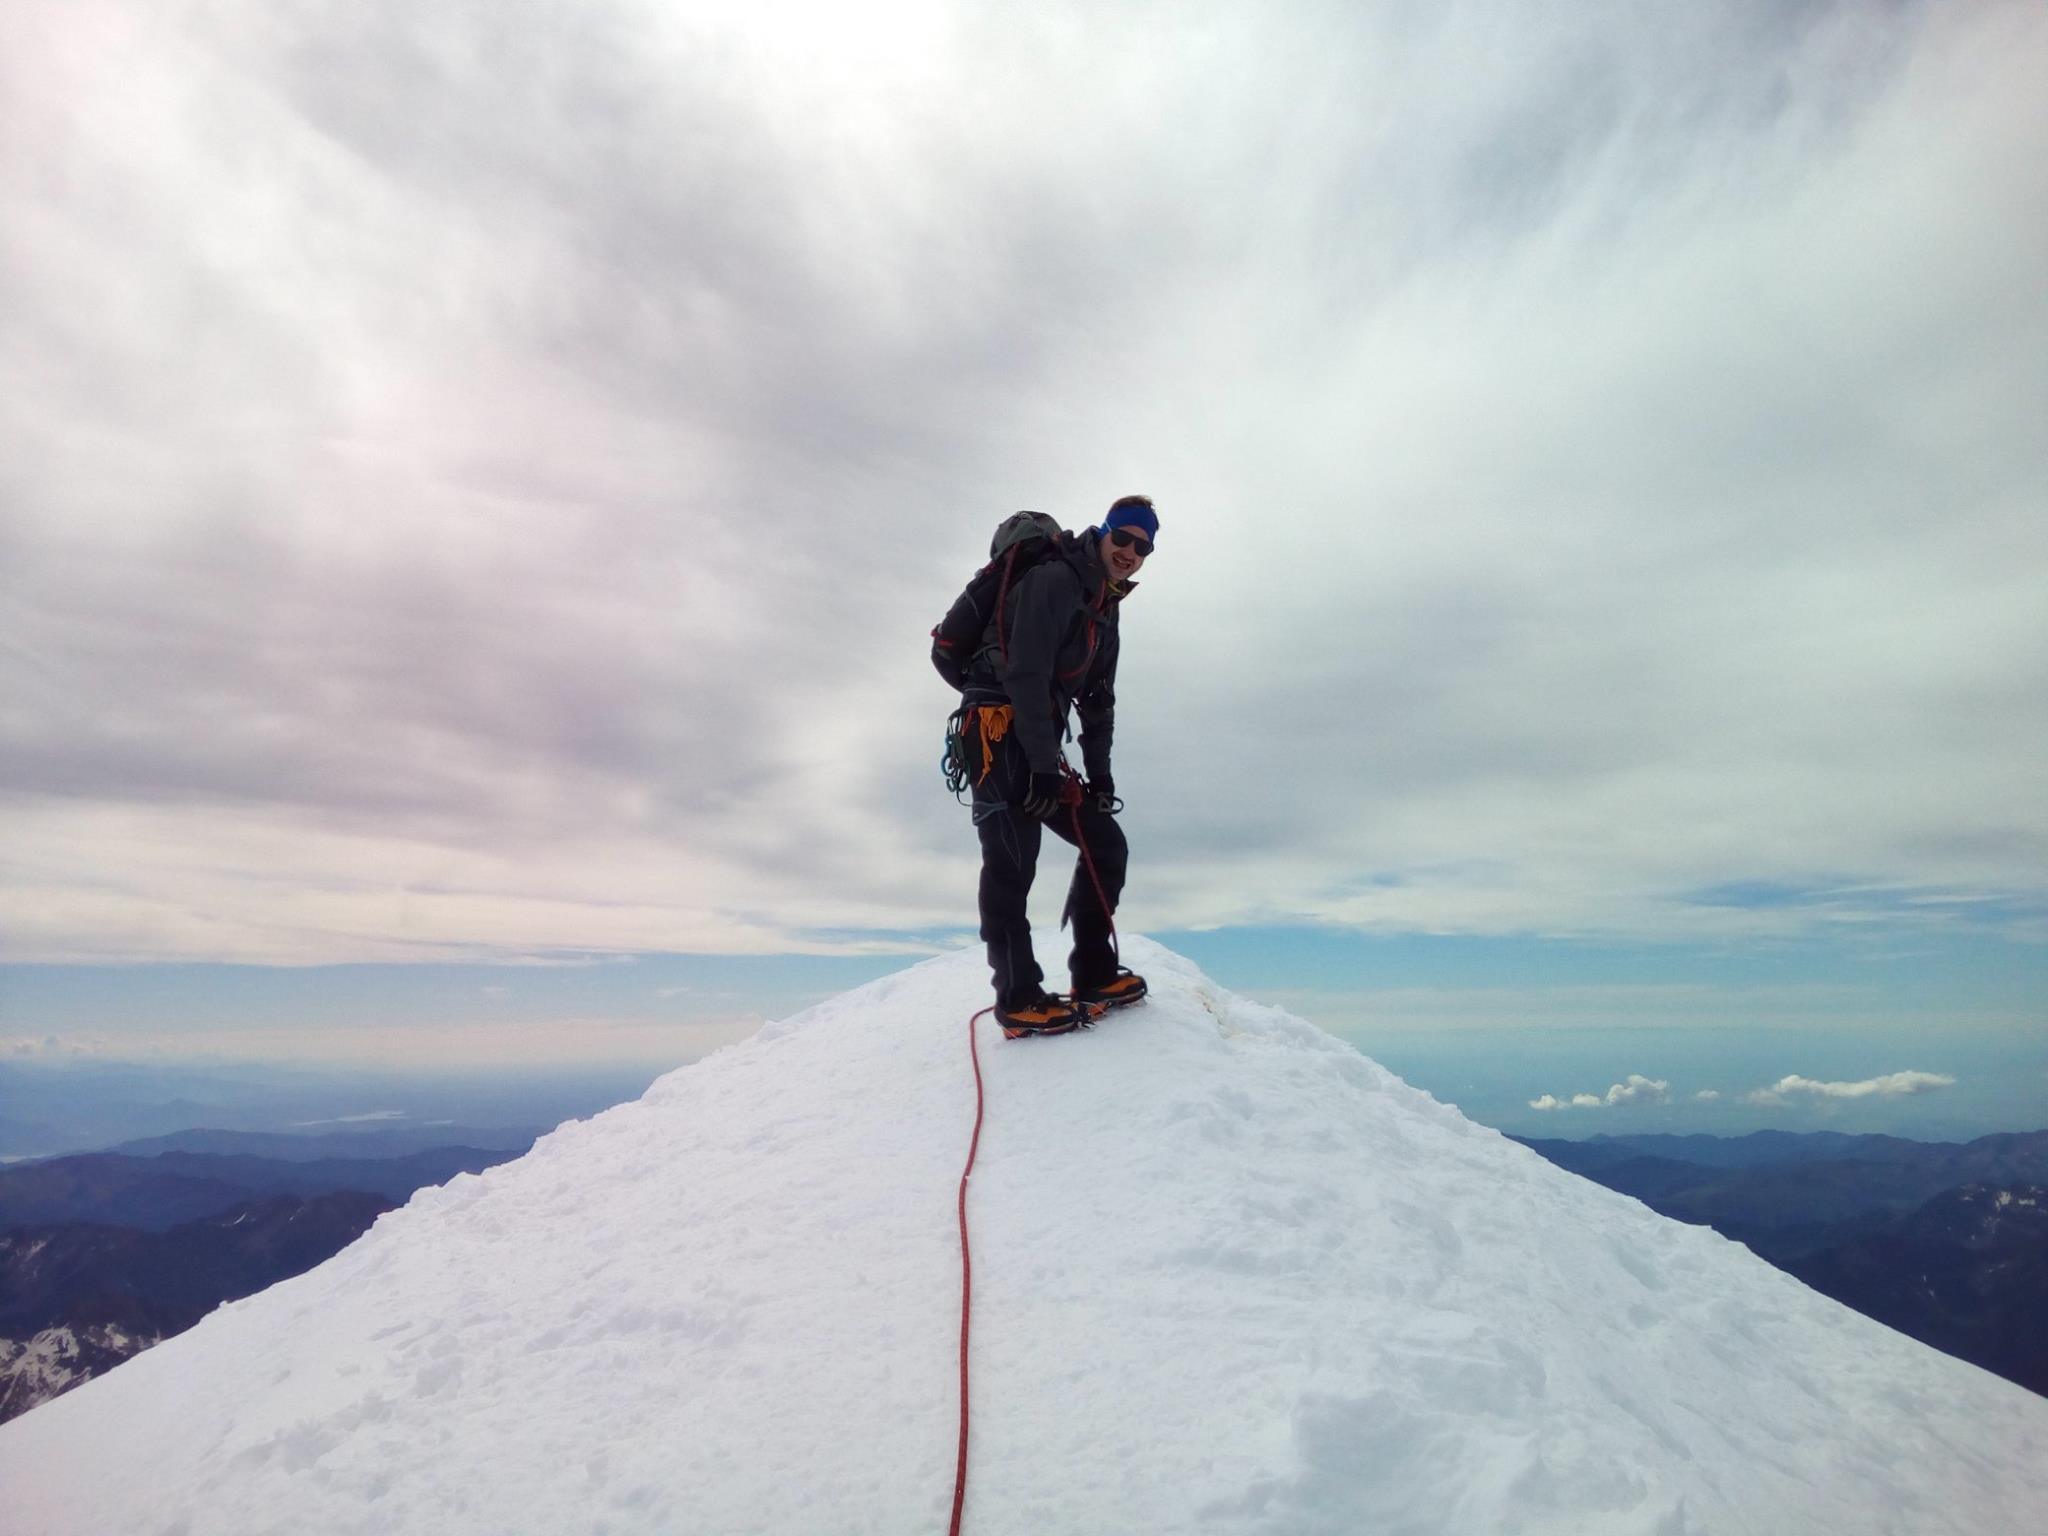 Ziele – Ladhak / Stok Kangri (6.153 m): Laudi will's wissen und steigt seinem ersten 6.000er aufs Dach – ein Gastbeitrag